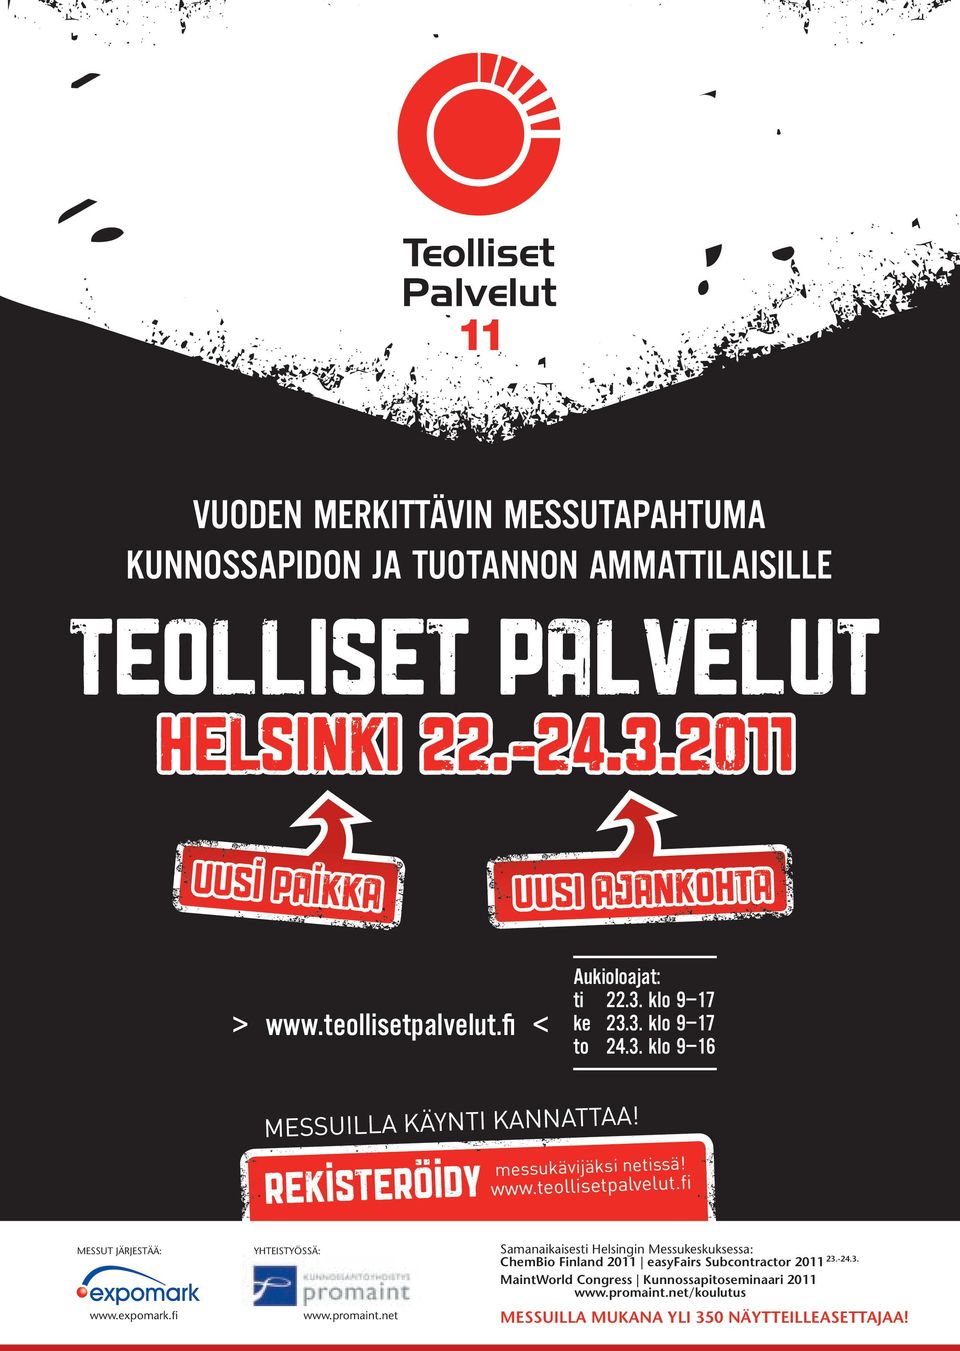 Rekisteröidy www.teollisetpalvelut.fi MessUt JäRJestää: www.expomark.fi YhteistYössä: www.promaint.